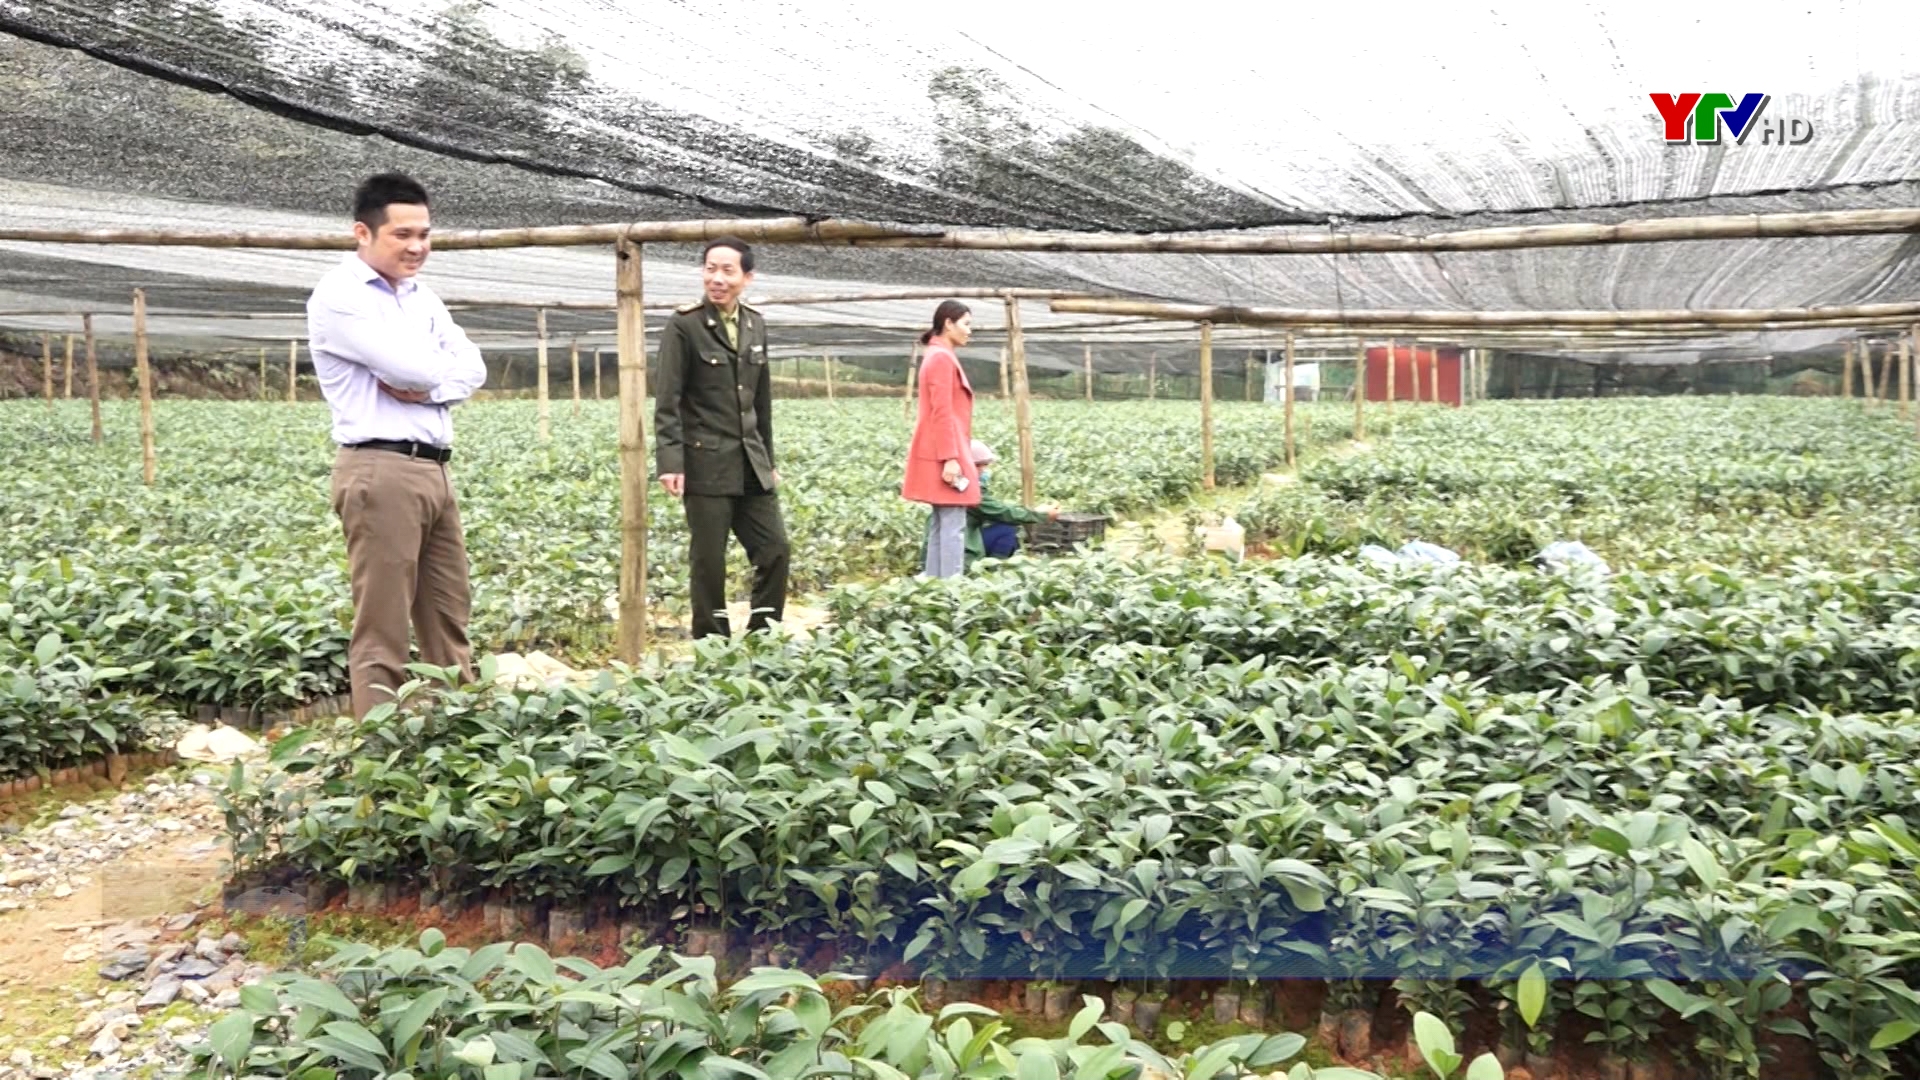 Huyện Lục Yên trồng được 1.000 ha rừng trong vụ xuân